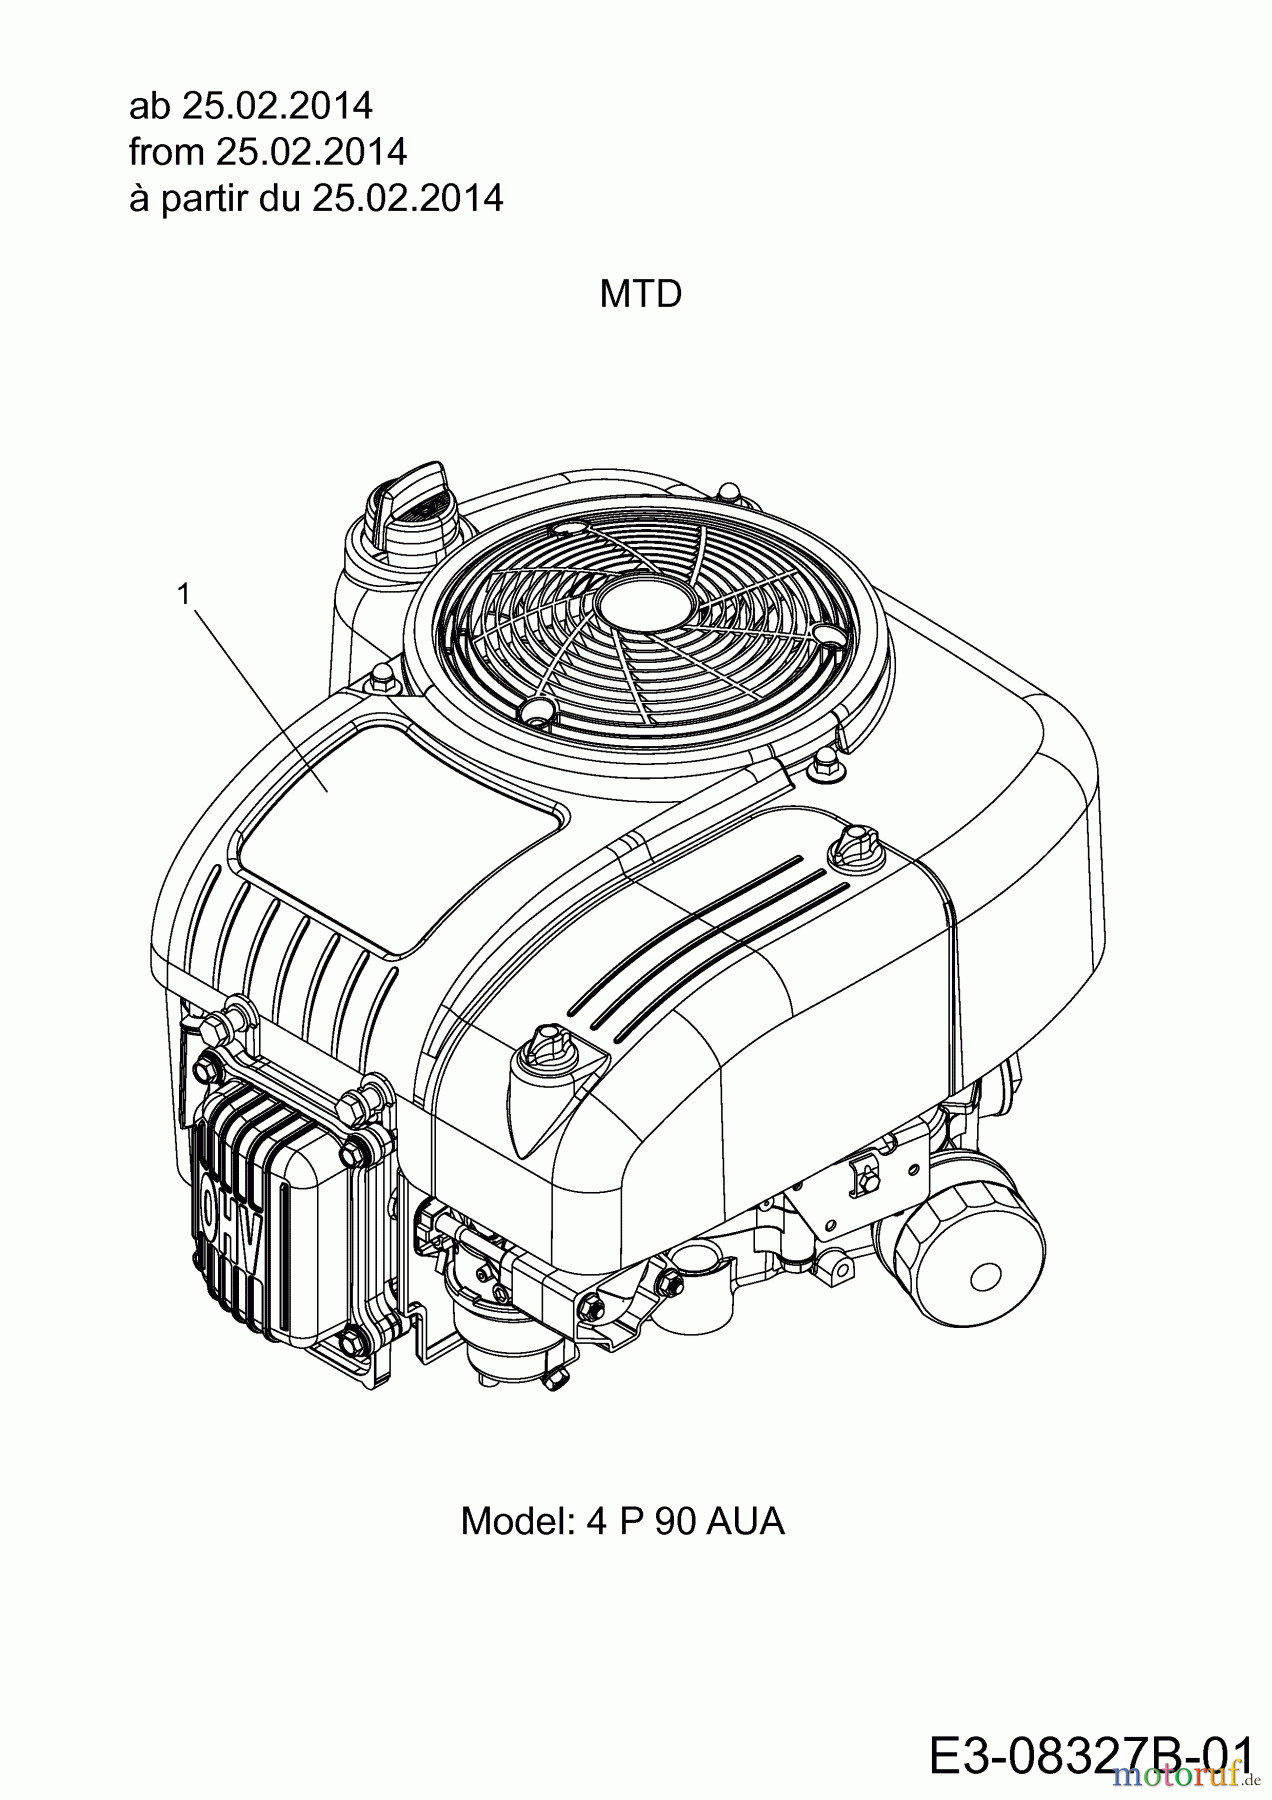  MTD Rasentraktoren DL 92 T 13H2765E676  (2014) Motor MTD ab 25.02.2014